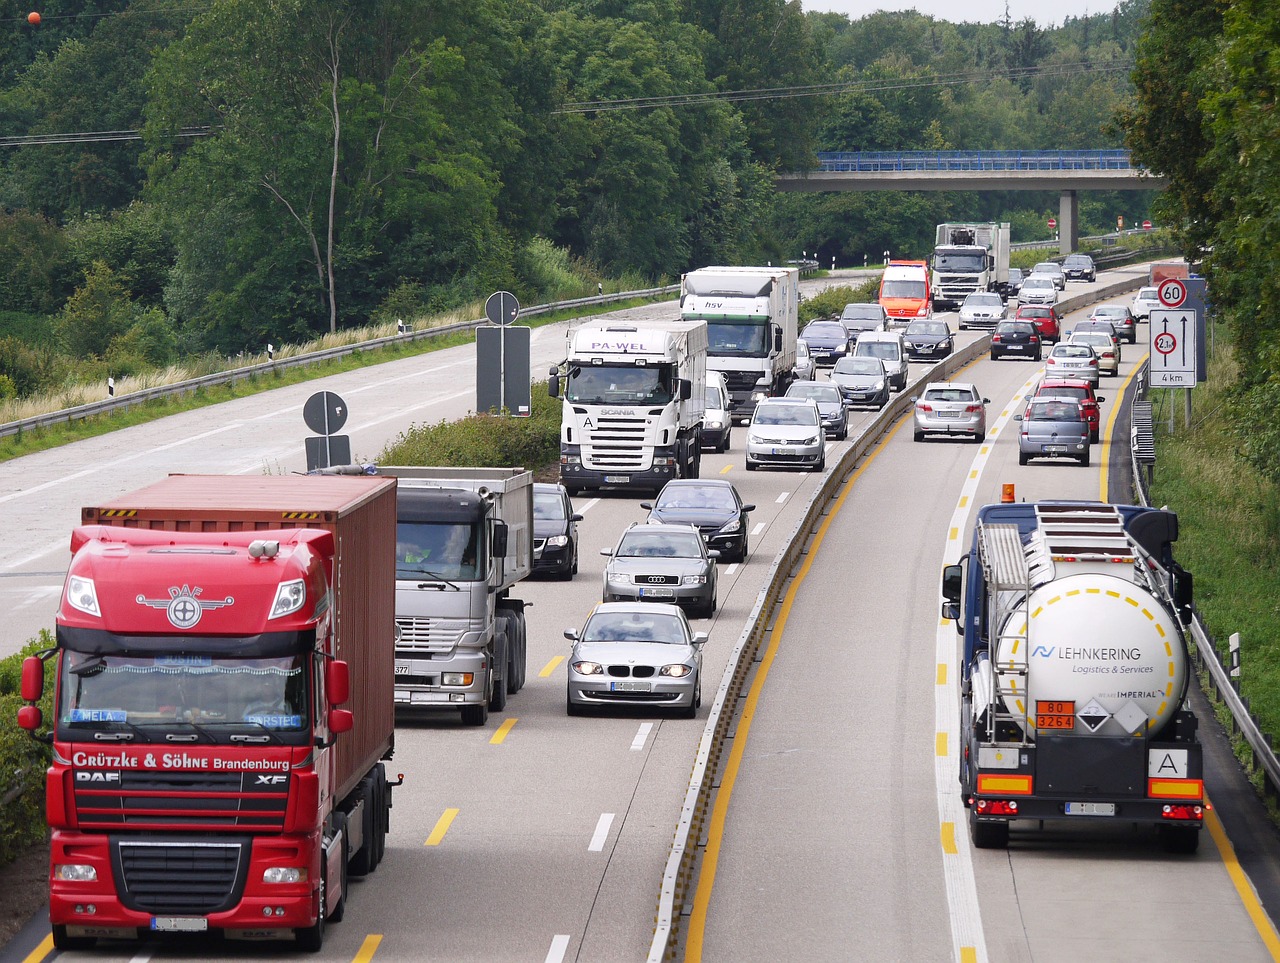 Dal 2035 solo camion elettrici per il trasporto merci?